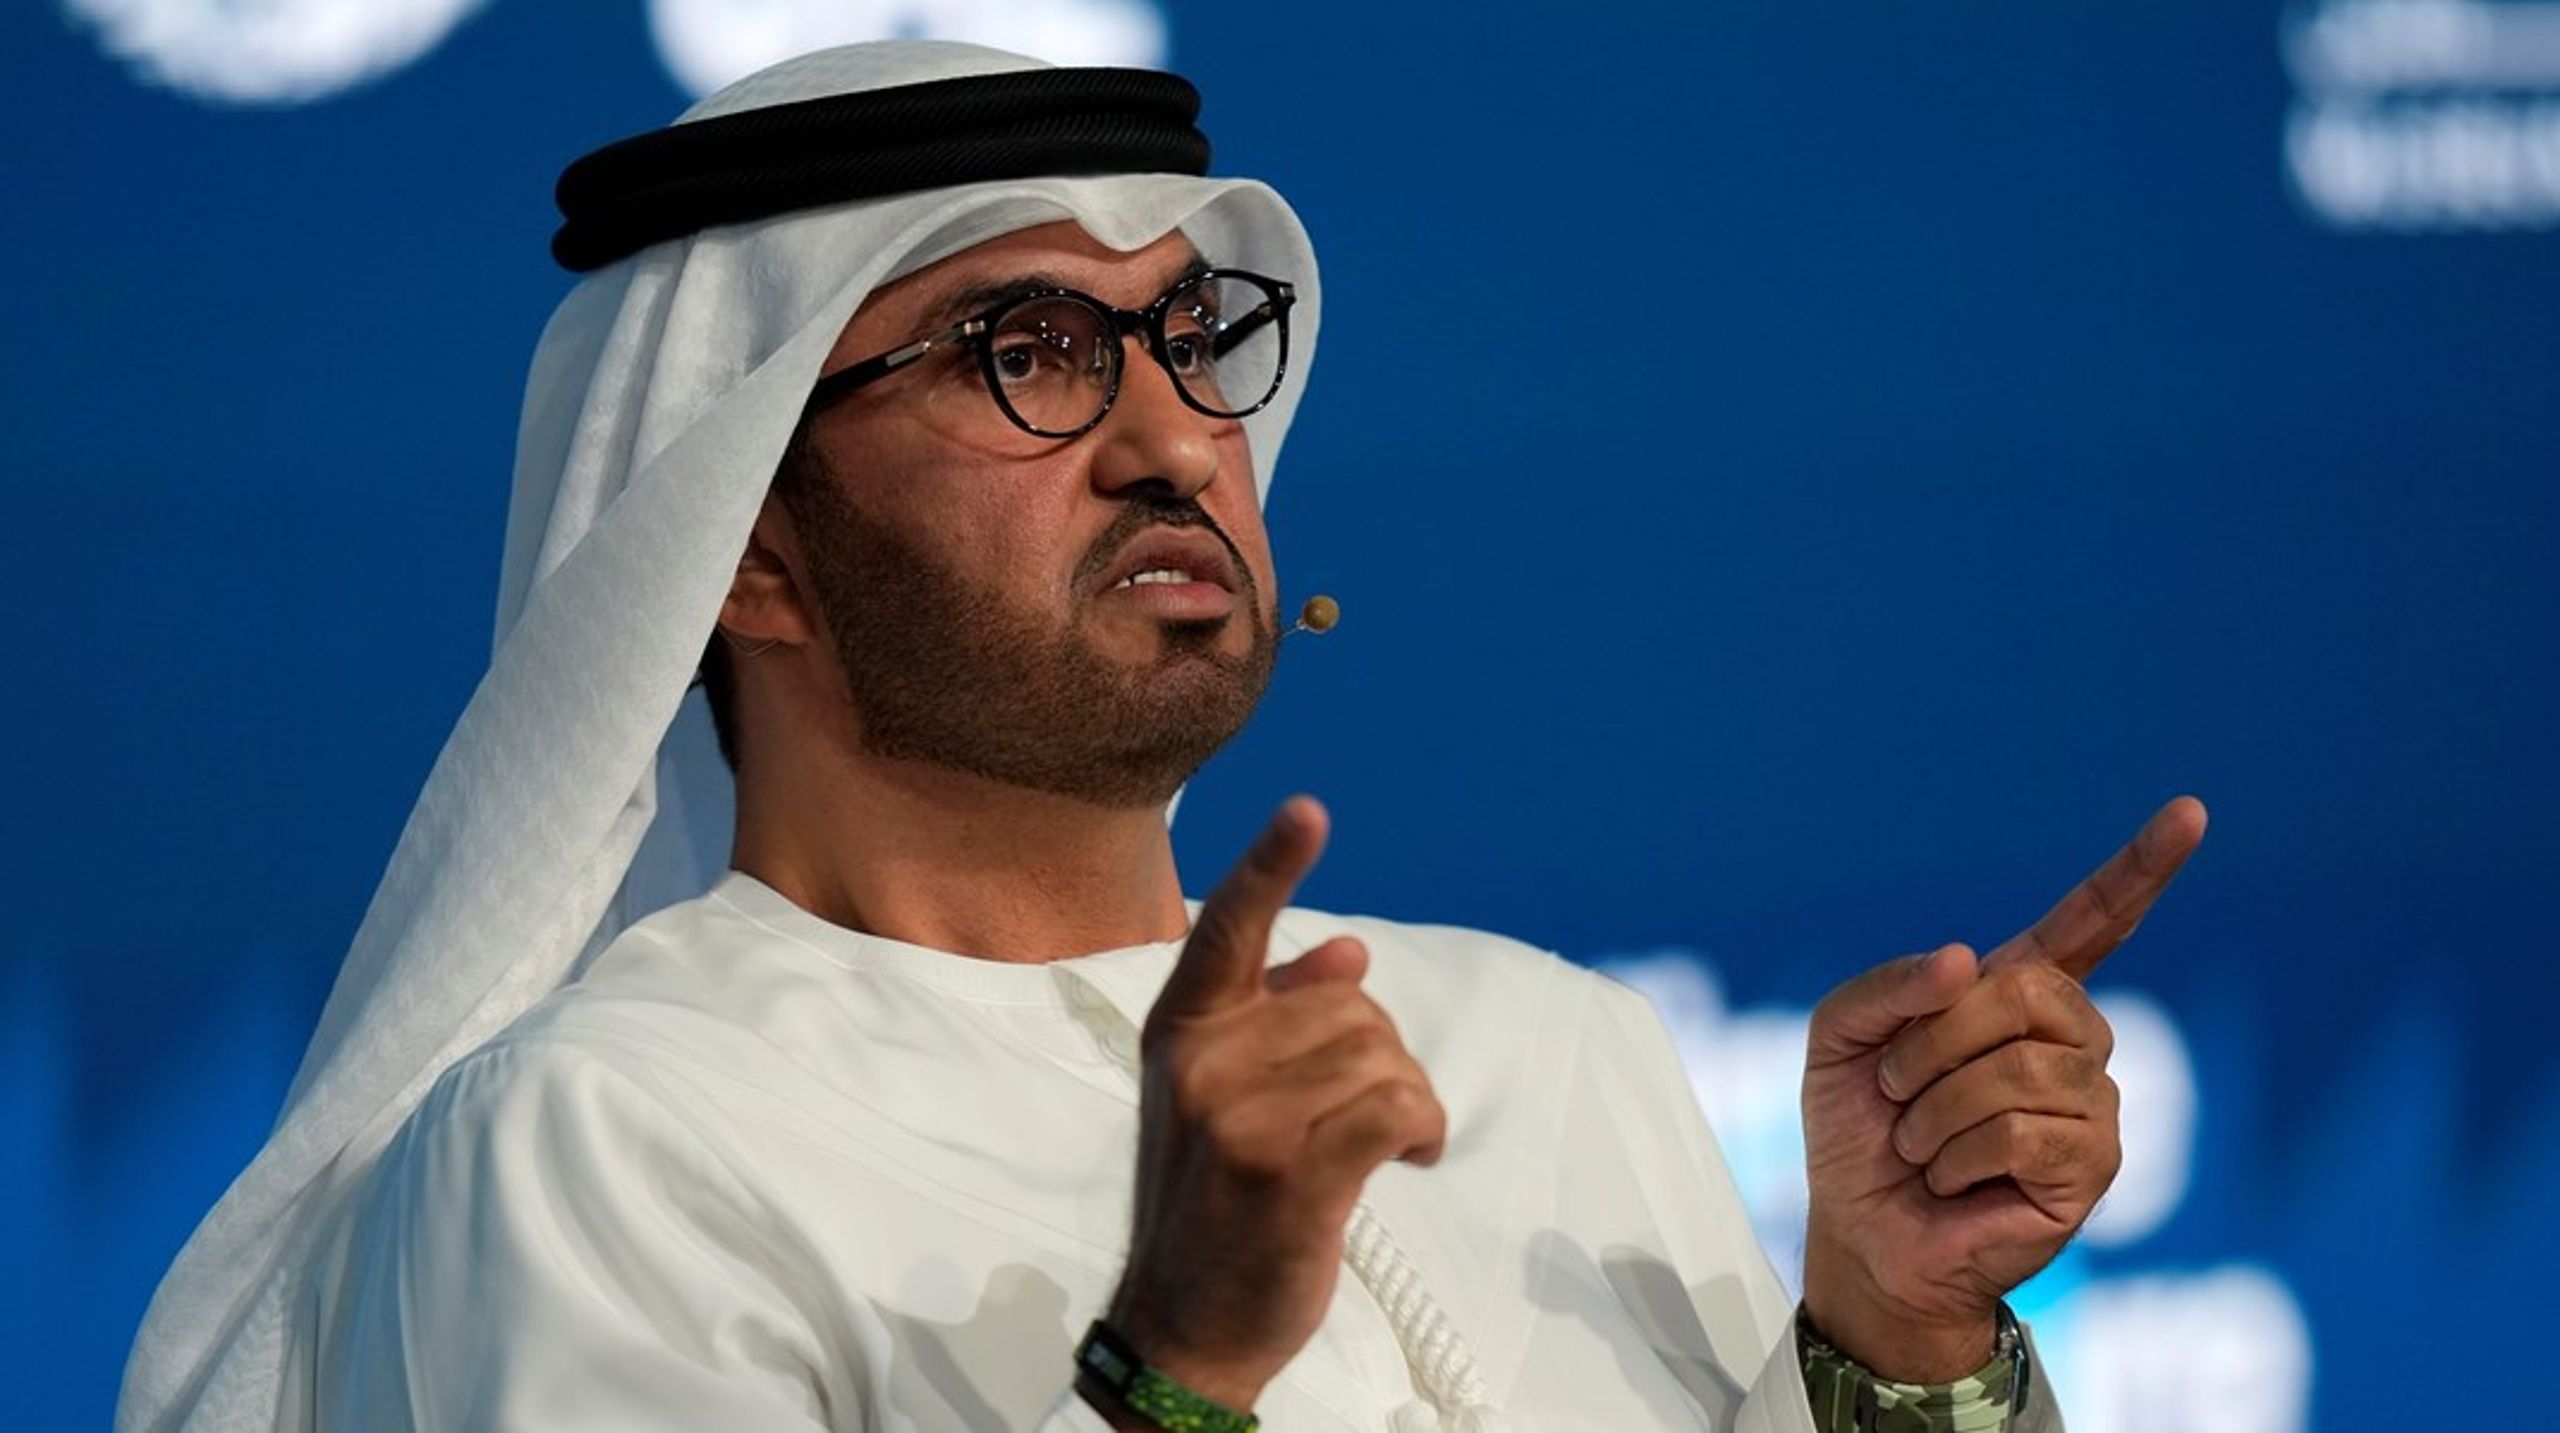 Sultan Al Jaber er i kraft af sine mange roller selve legemliggørelsen af den tilgang, styret i De Forenede Arabiske Emirater har til klimaforandringerne og vil have til de konkrete forhandlinger på klimatopmødet.